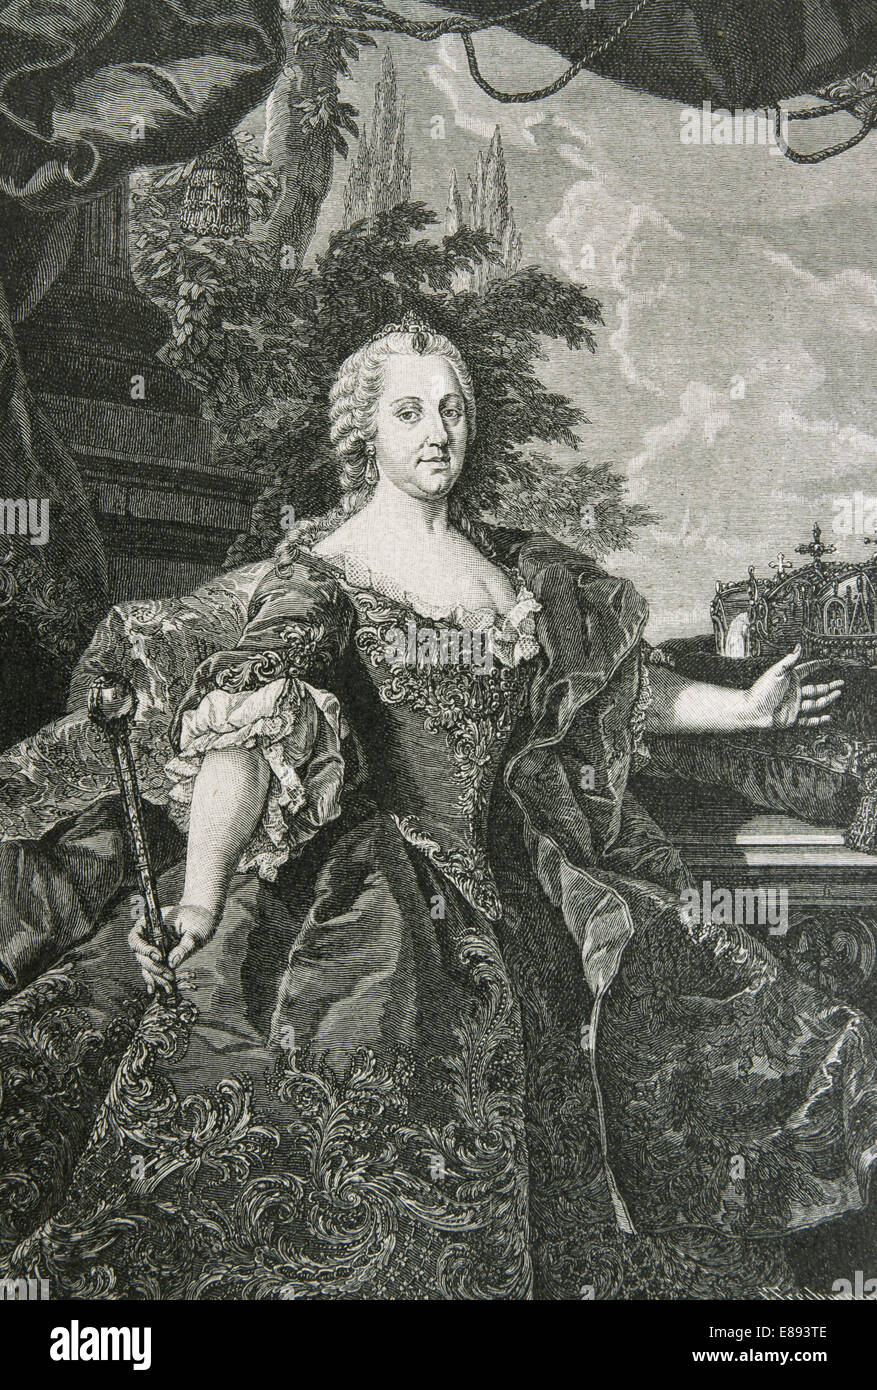 Maria Theresa von Österreich, 1717-1780, souveränen von Österreich und Königin von Ungarn und Böhmen. Kupferstich von Troebmann. Welt Hist Stockfoto